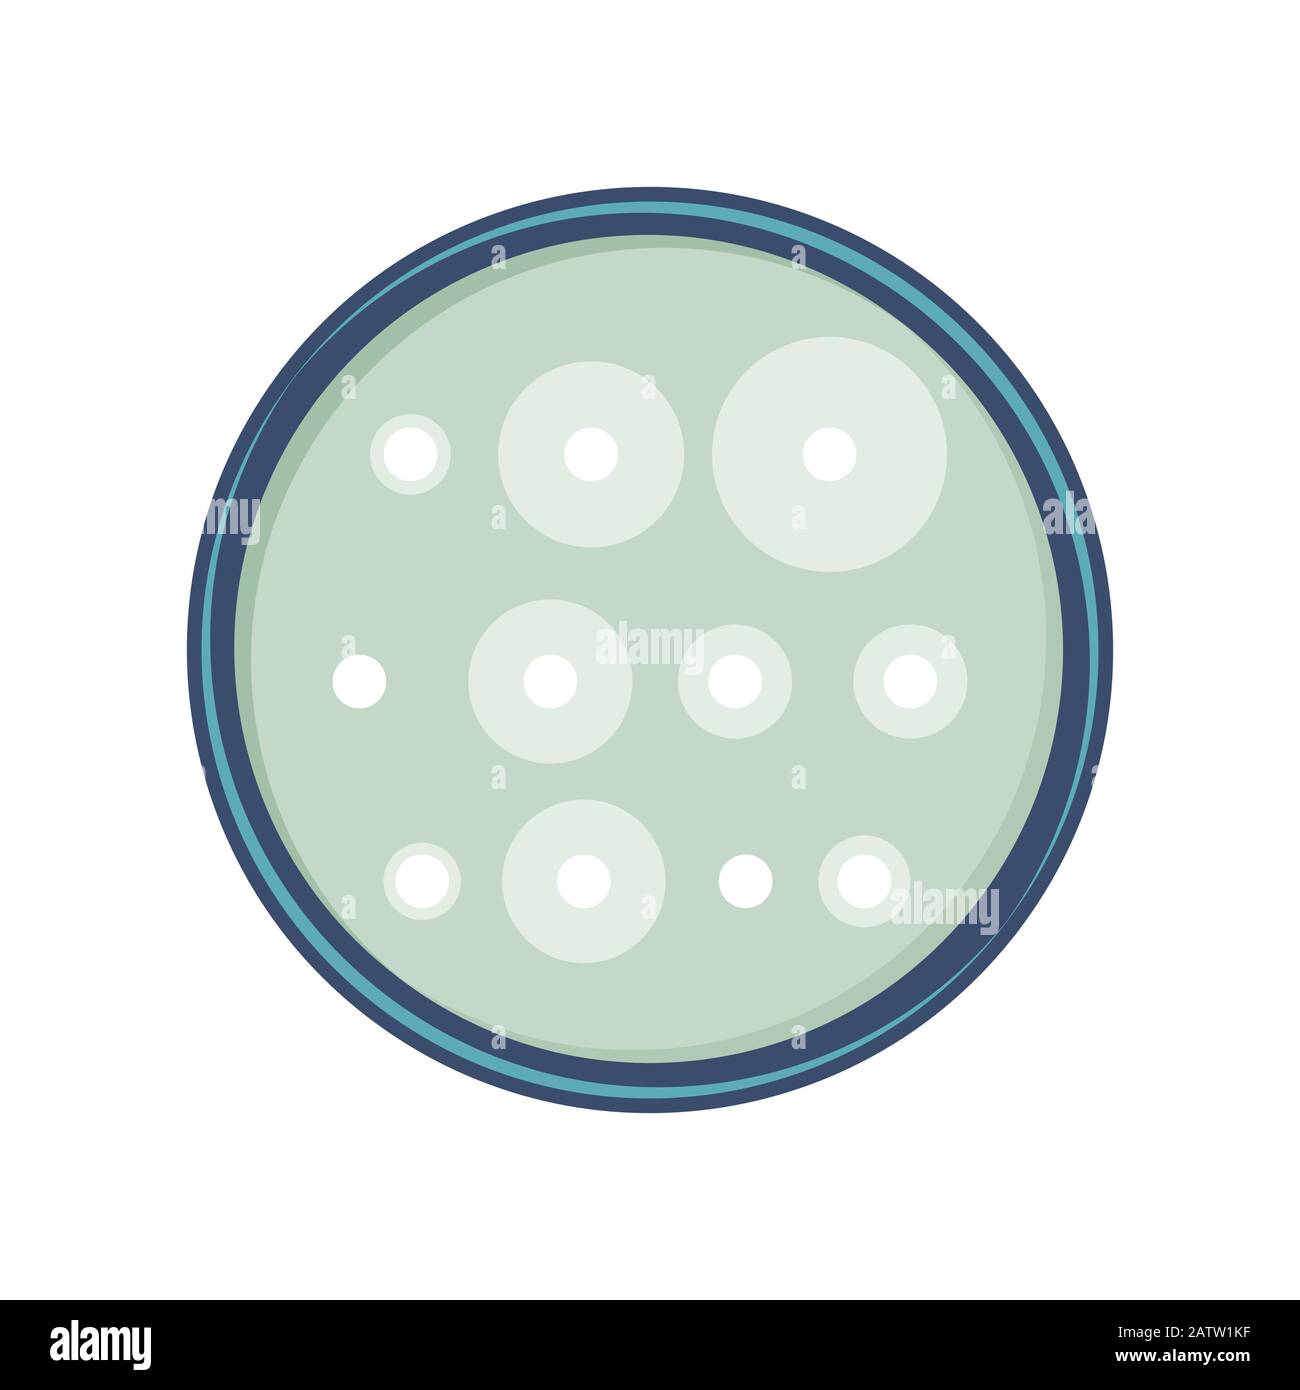 Analyse de sensibilité aux antibiotiques des bactéries dans la boîte de pétri, conception vectorielle plate. Illustration de Vecteur